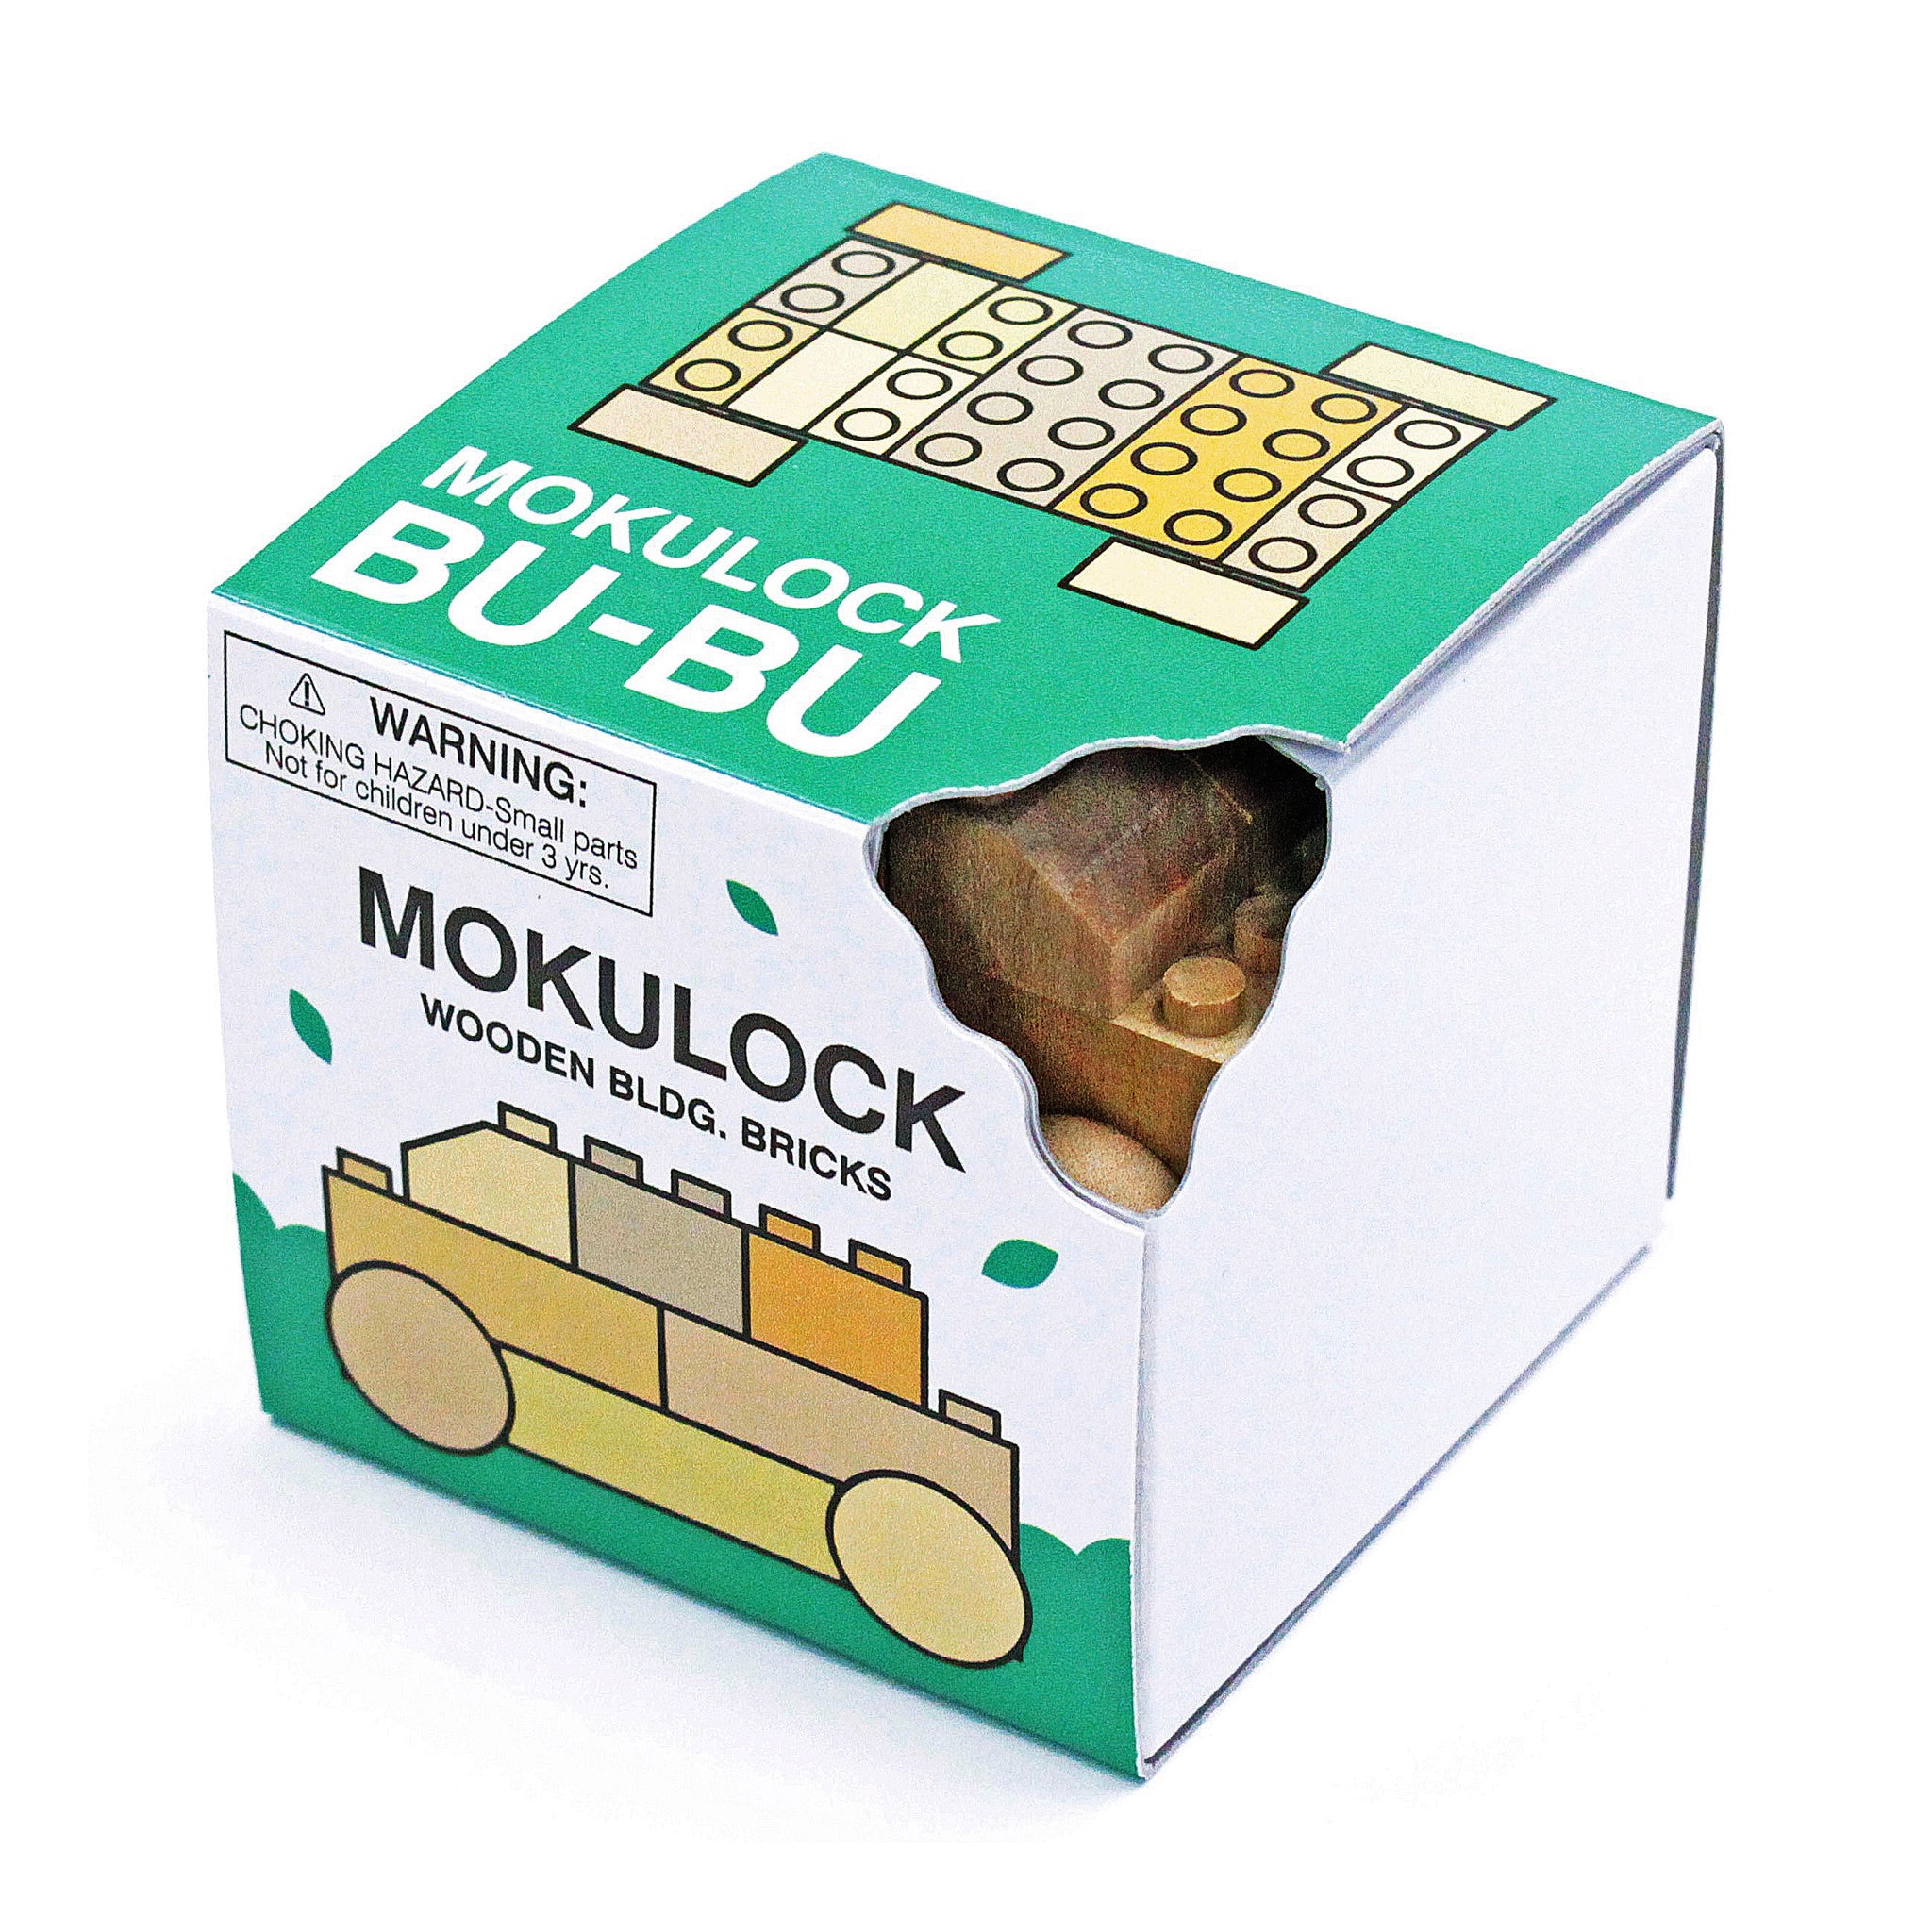 MOKULOCK "BUBU" 14 pieces by Peekasense - Malaysia